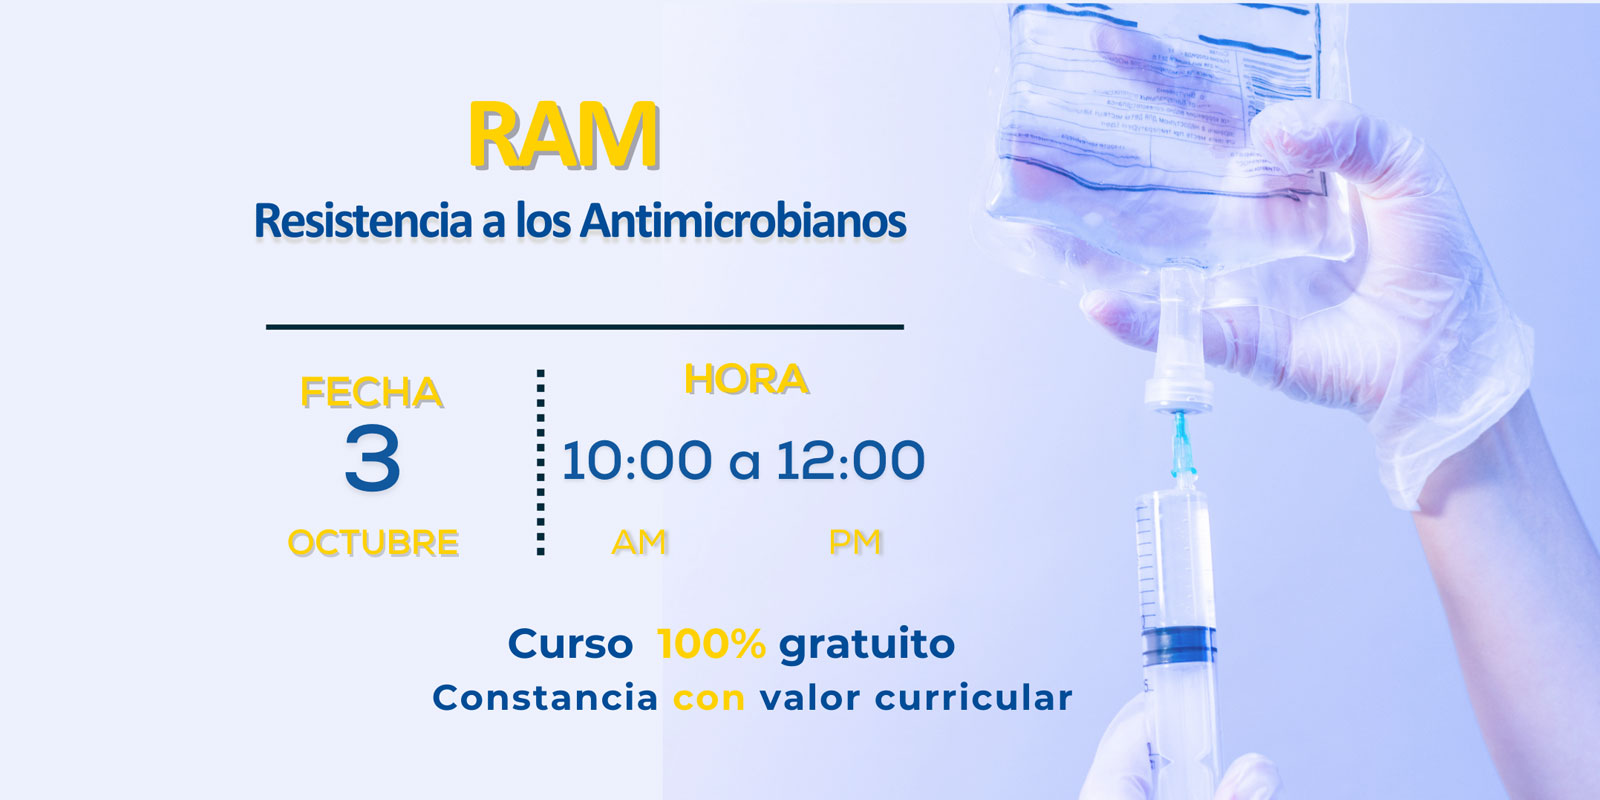 Resistencia a los Antimicrobianos (RAM)